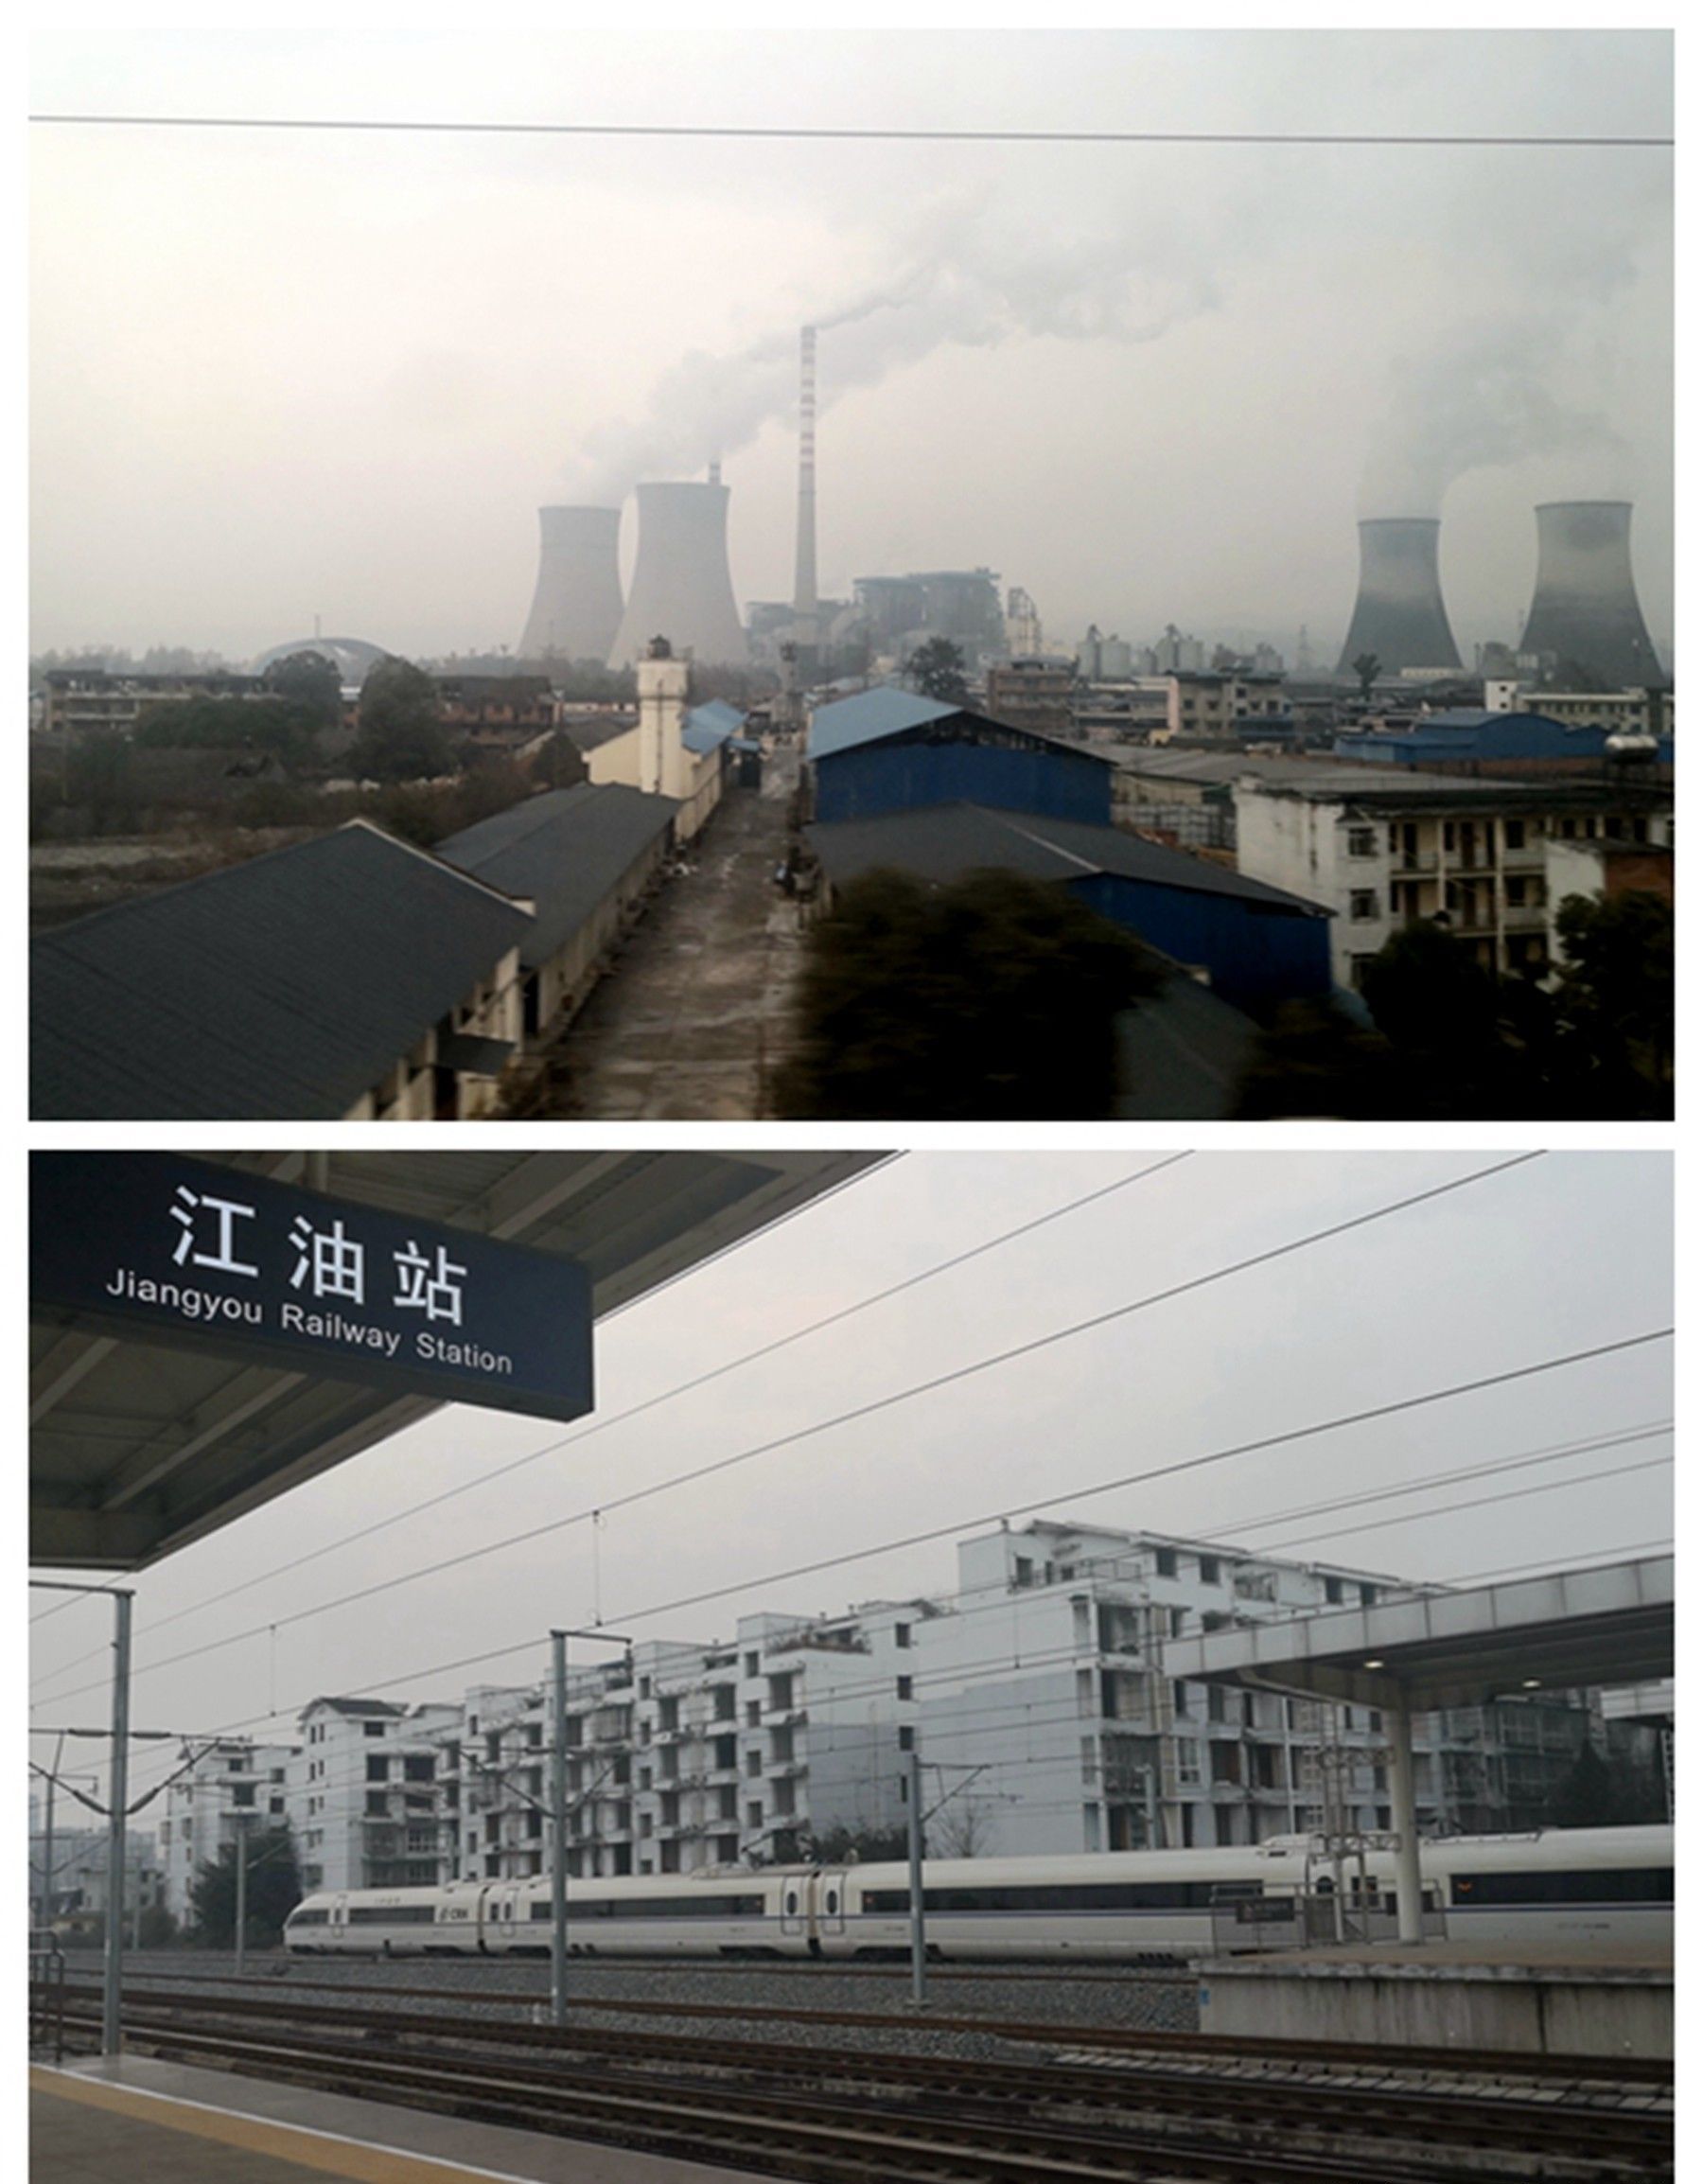 一天之中从北京到四川,高铁上看遍沿途天气,还